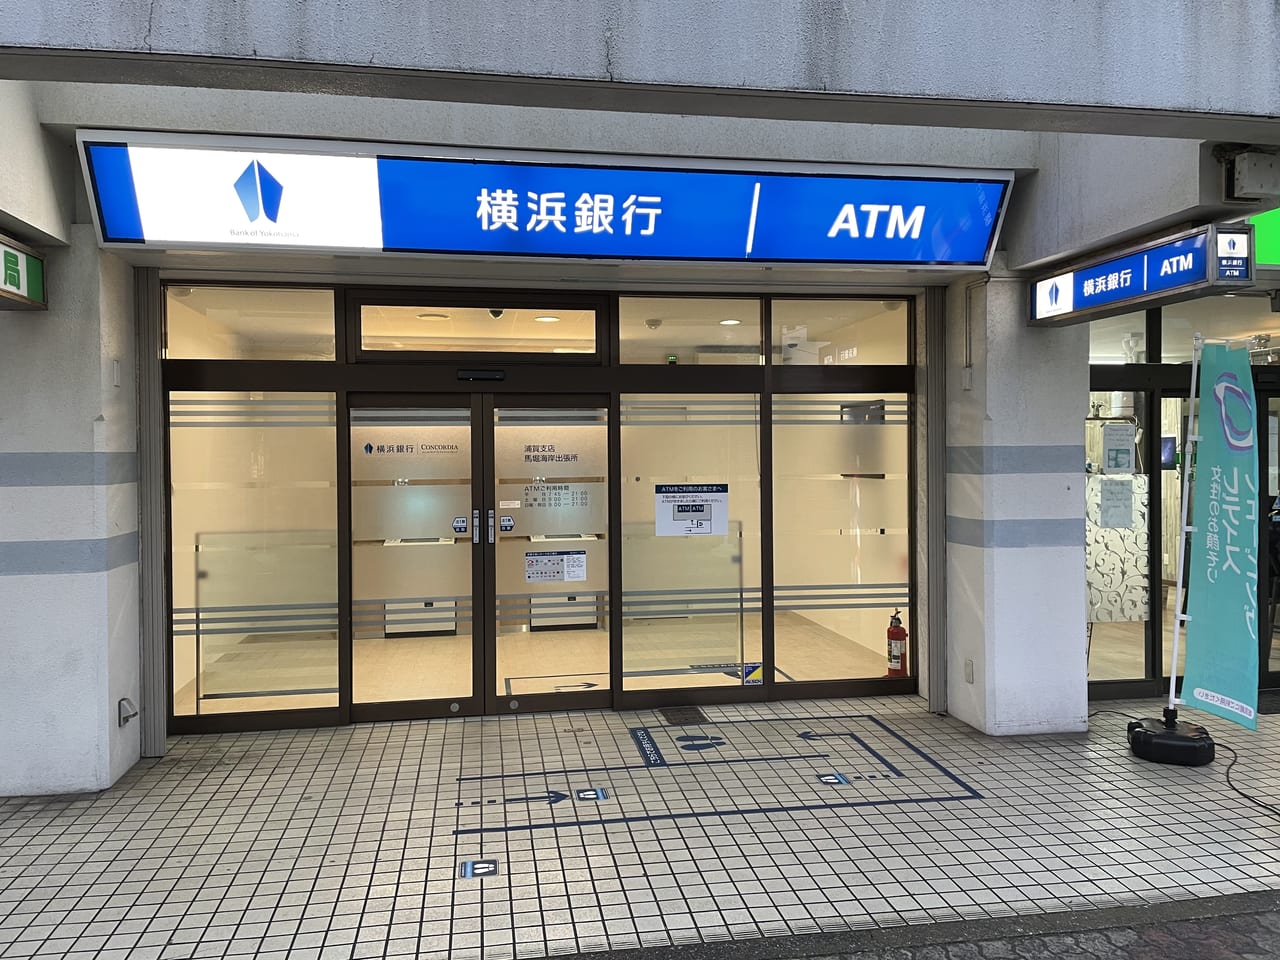 横須賀市 Atmは新設置 横浜銀行馬堀支店が店舗移転しました 号外net 横須賀市 三浦市